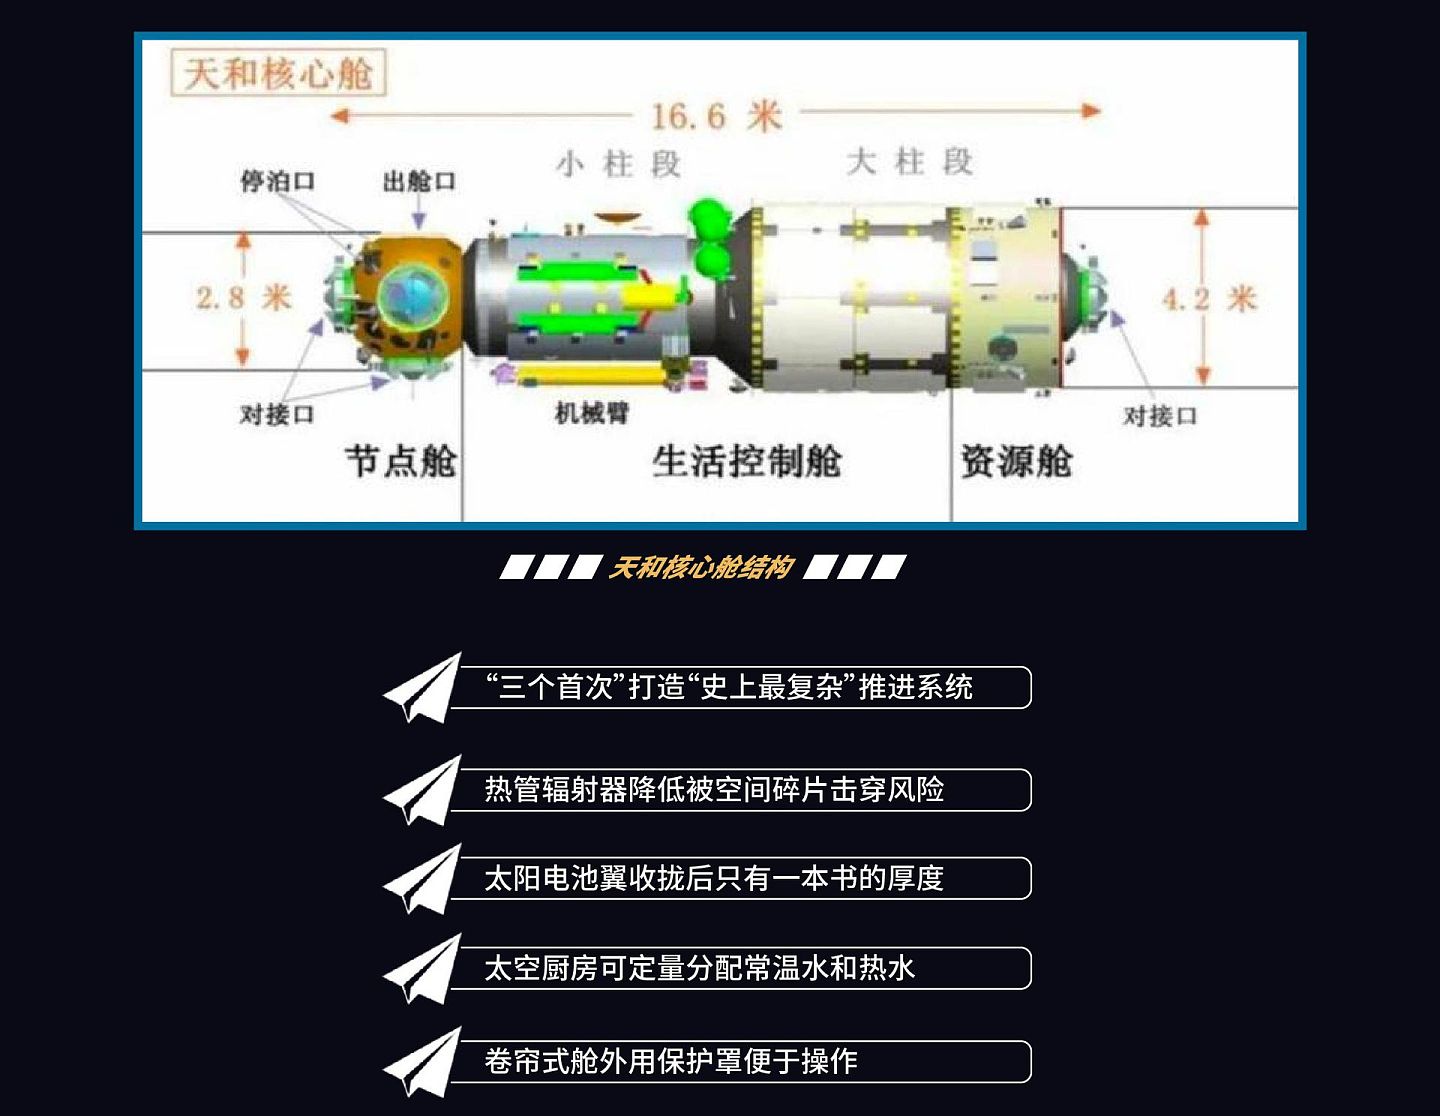 天和核心舱是中国空间站的主要控制节点，是未来中国空间站的指挥控制中心，具备交会对接、转位与停泊、乘组长期驻留、航天员出舱、保障空间科学实验能力。（多维新闻制作）